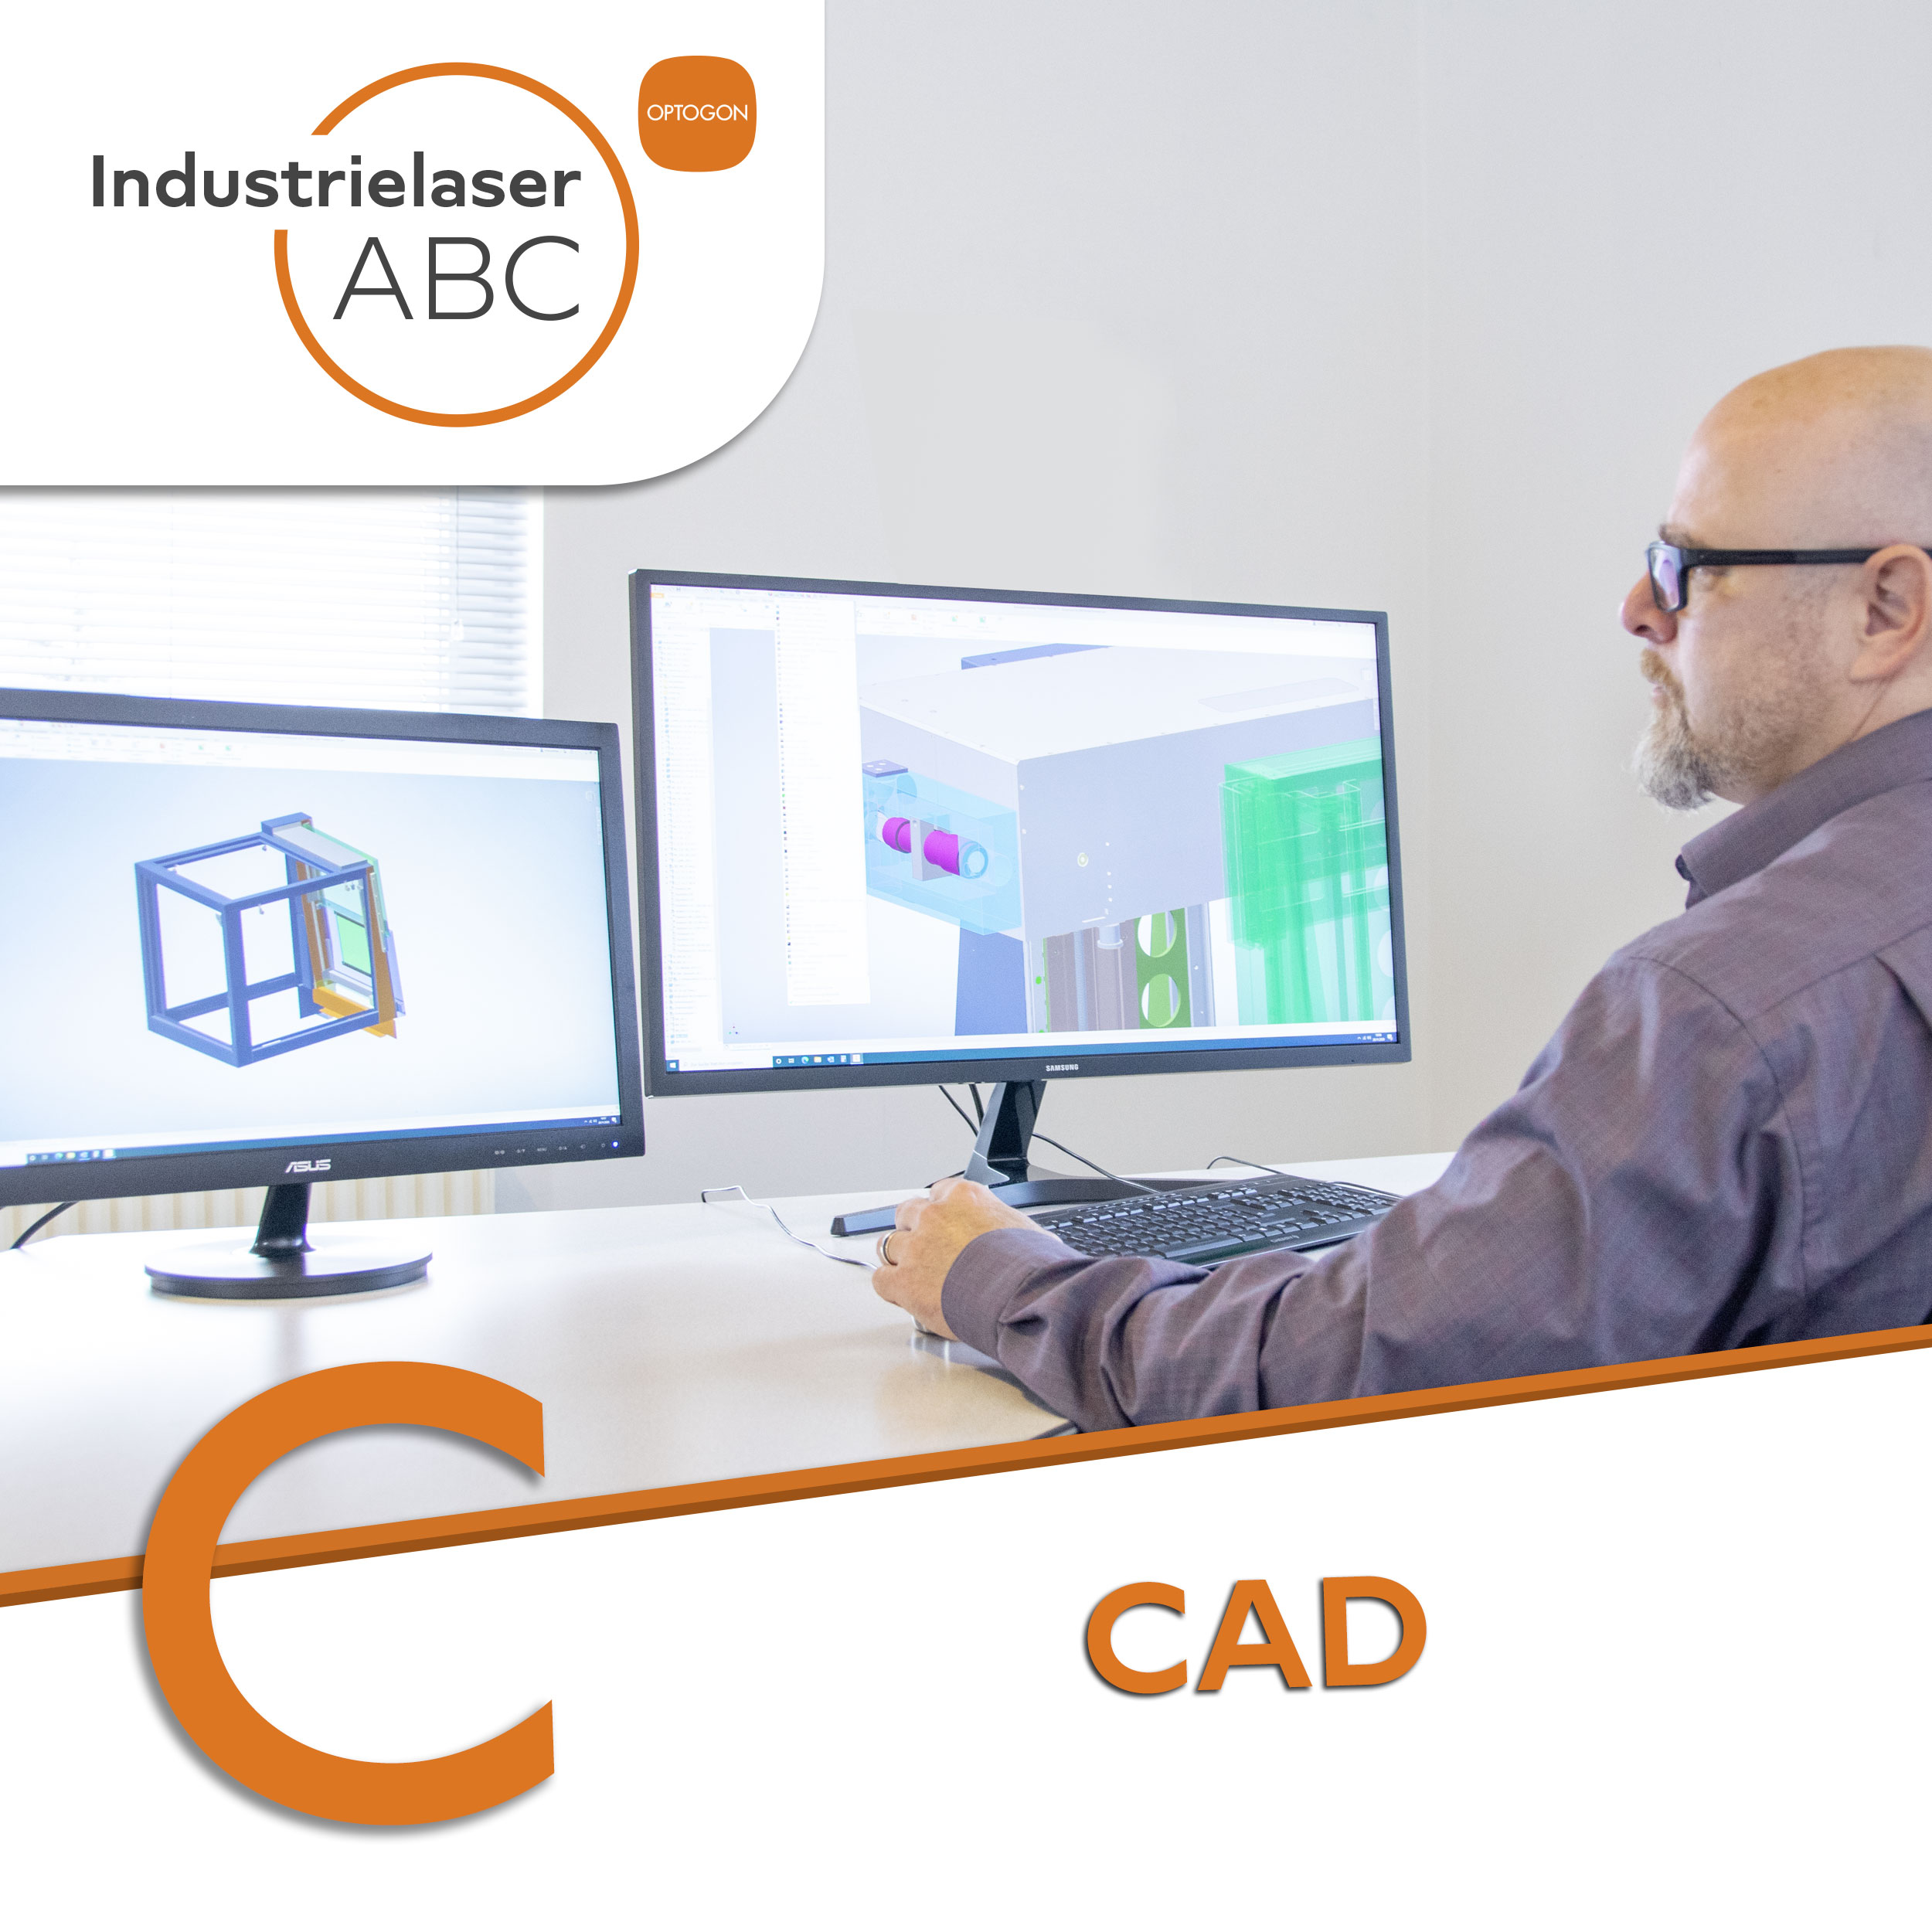 Industrielaser CAD